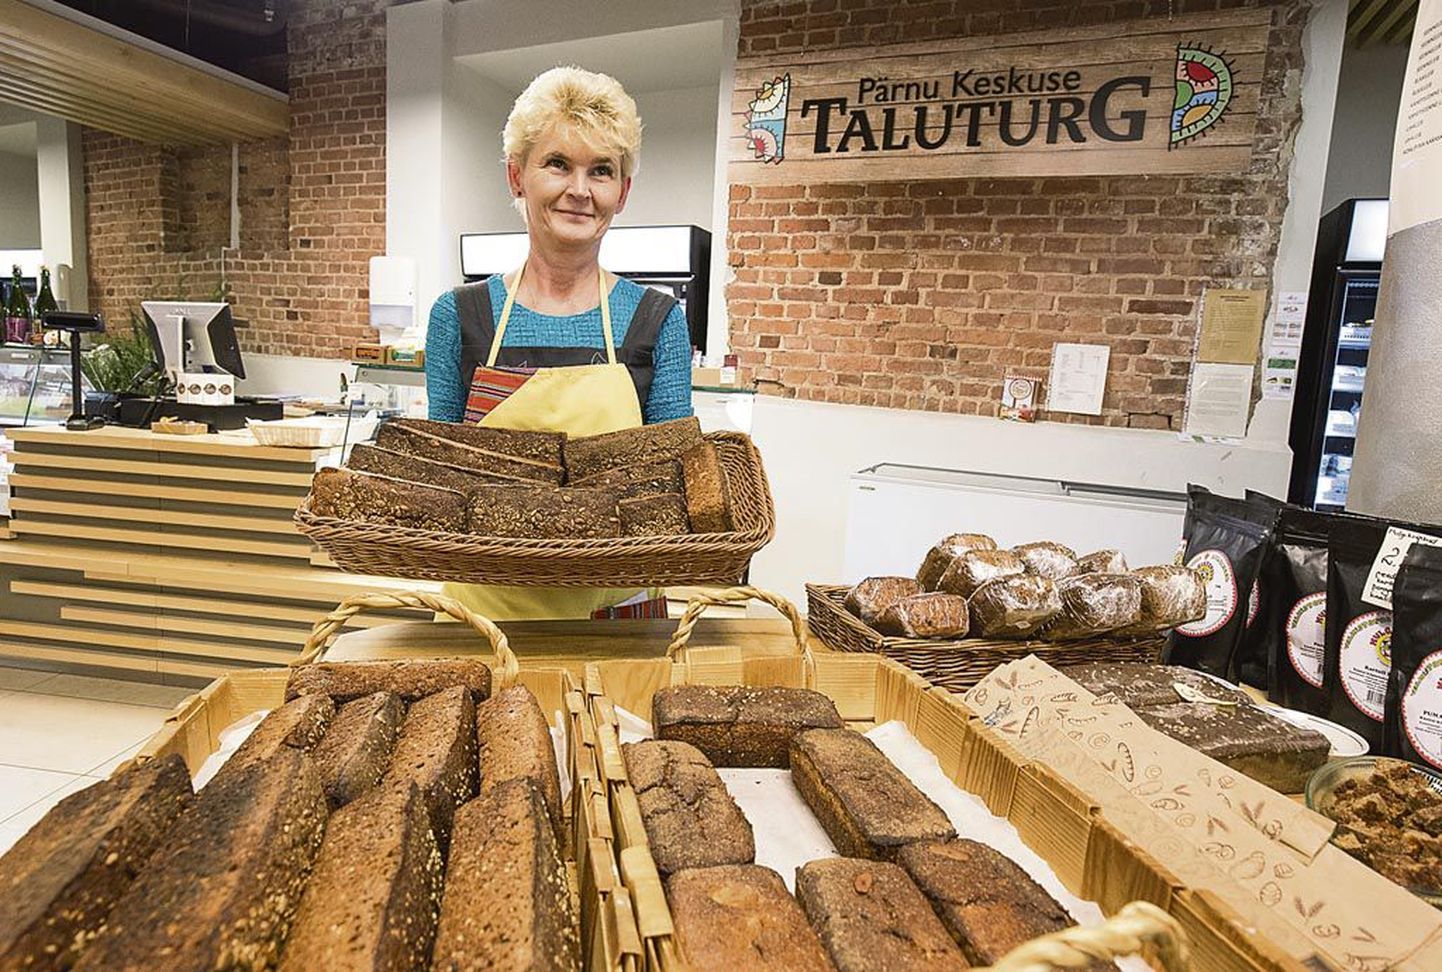 Pärnu Keskuse taluturul küpsetatakse iga päev leiba. Klienditeenindaja Ester Juss toob letile ahjusoojad leivad.